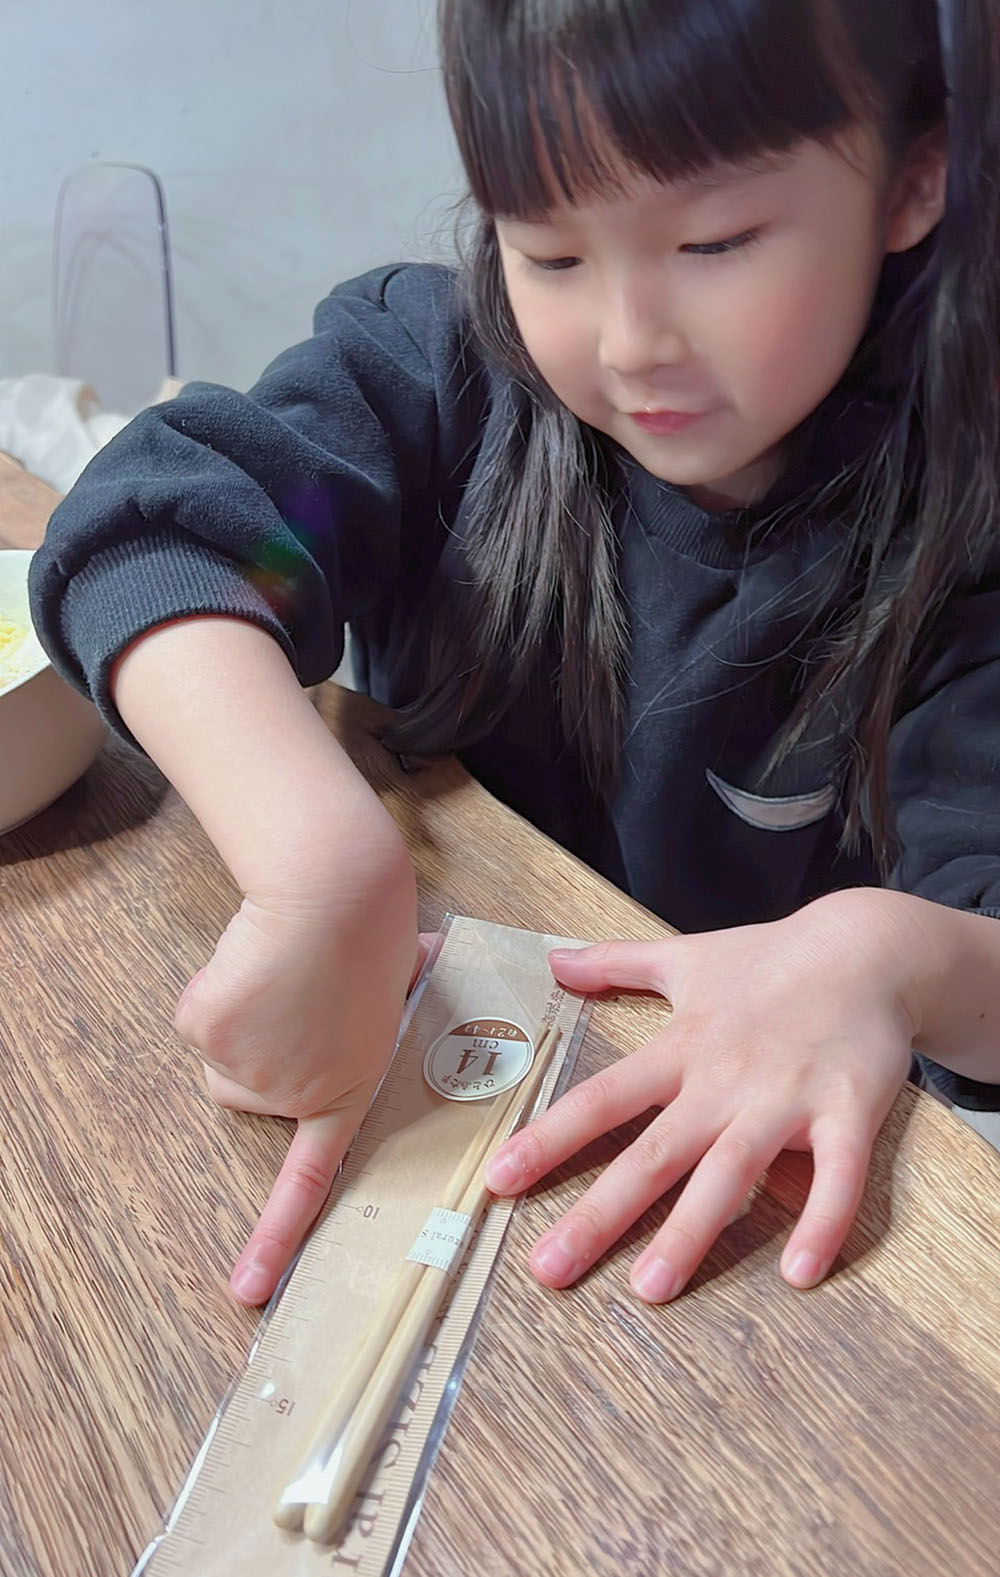 [啾團] 韓國日本綜合團-韓國Color Story免燙拼豆、日本NICO微笑系列餐具、 親子兒童木筷、擦手巾、NICOTT毛巾